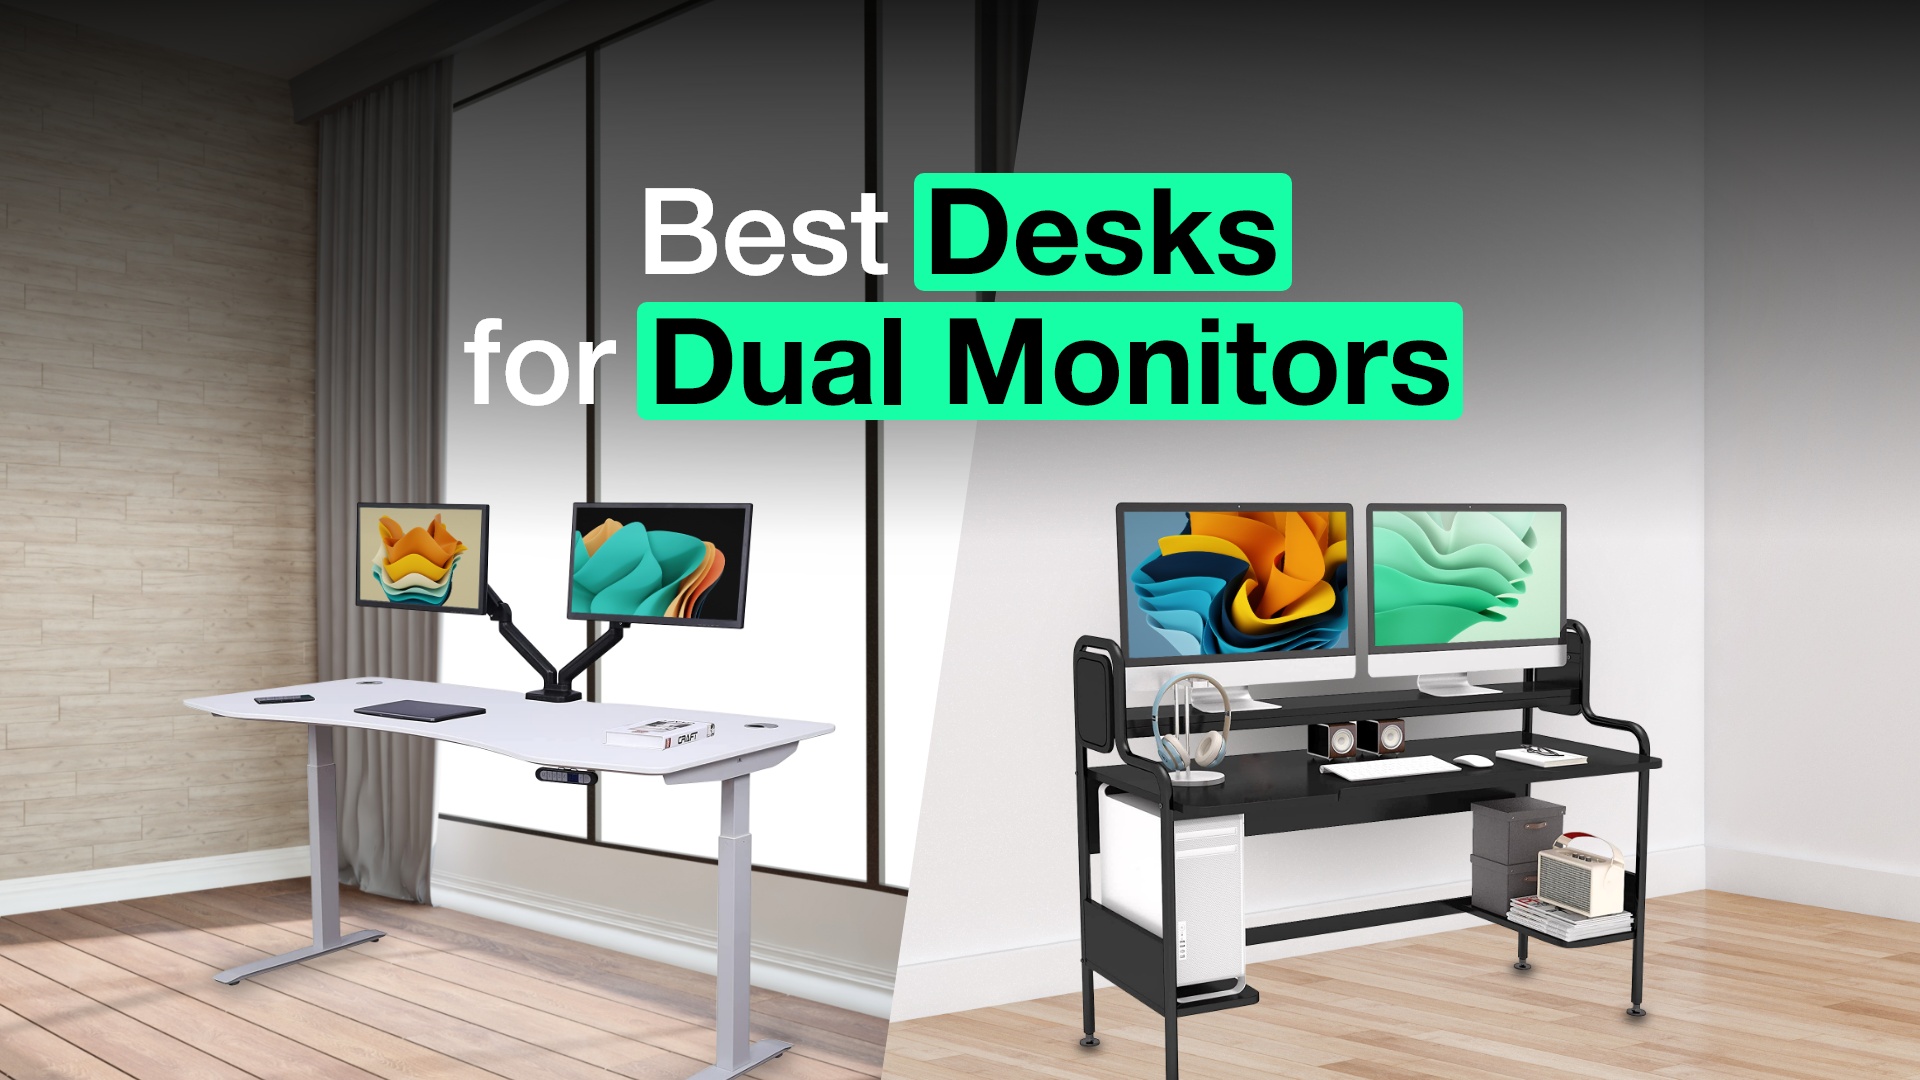 Best desks for dual monitors